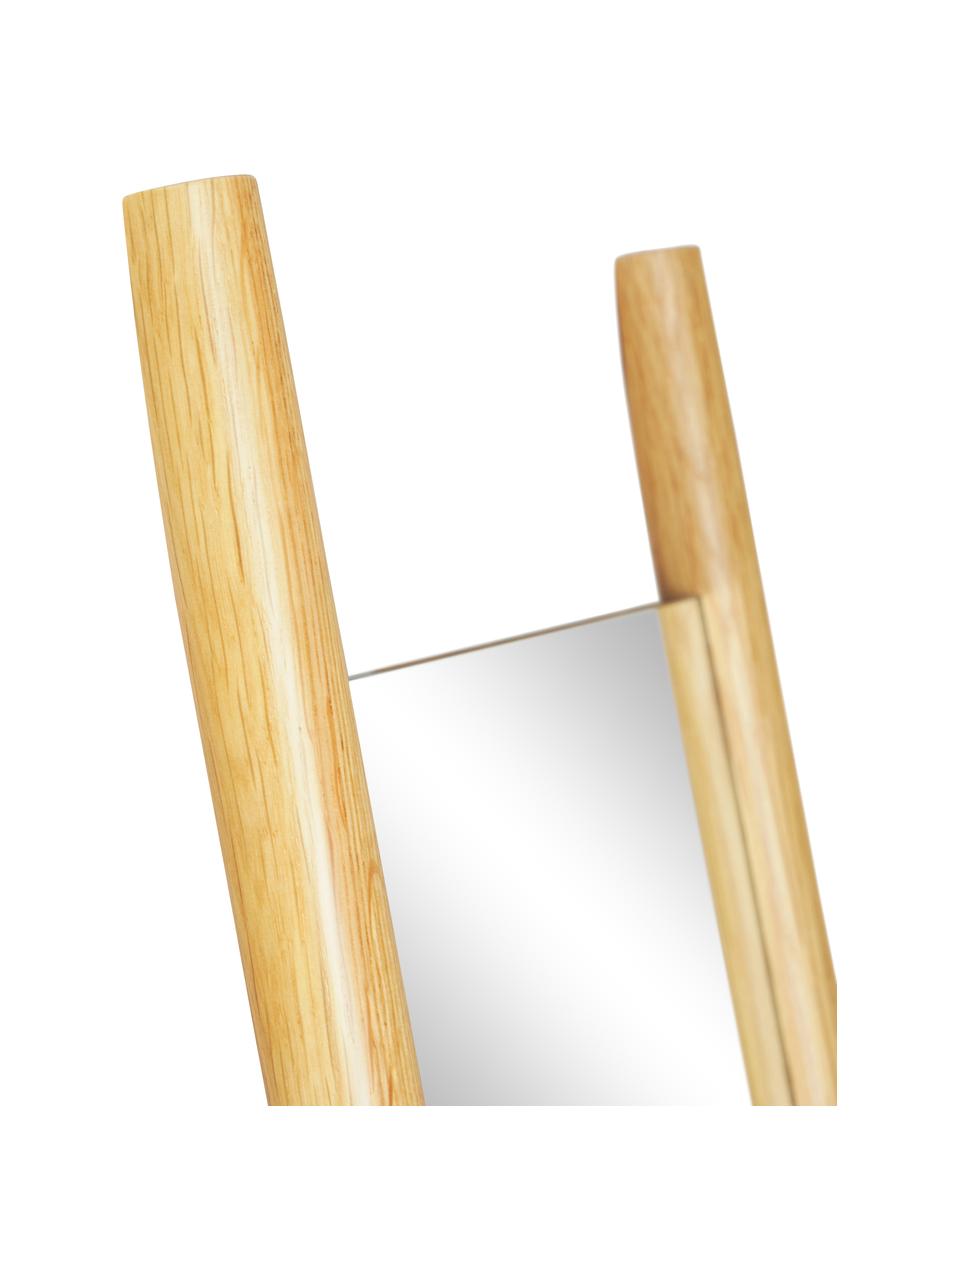 Eckiger Anlehnspiegel Elin mit Eichenholz-Streben, Rahmen: Eichenholz, Rückseite: Mitteldichte Holzfaserpla, Spiegelfläche: Spiegelglas, Eichenholz, B 45 cm, H 170 cm